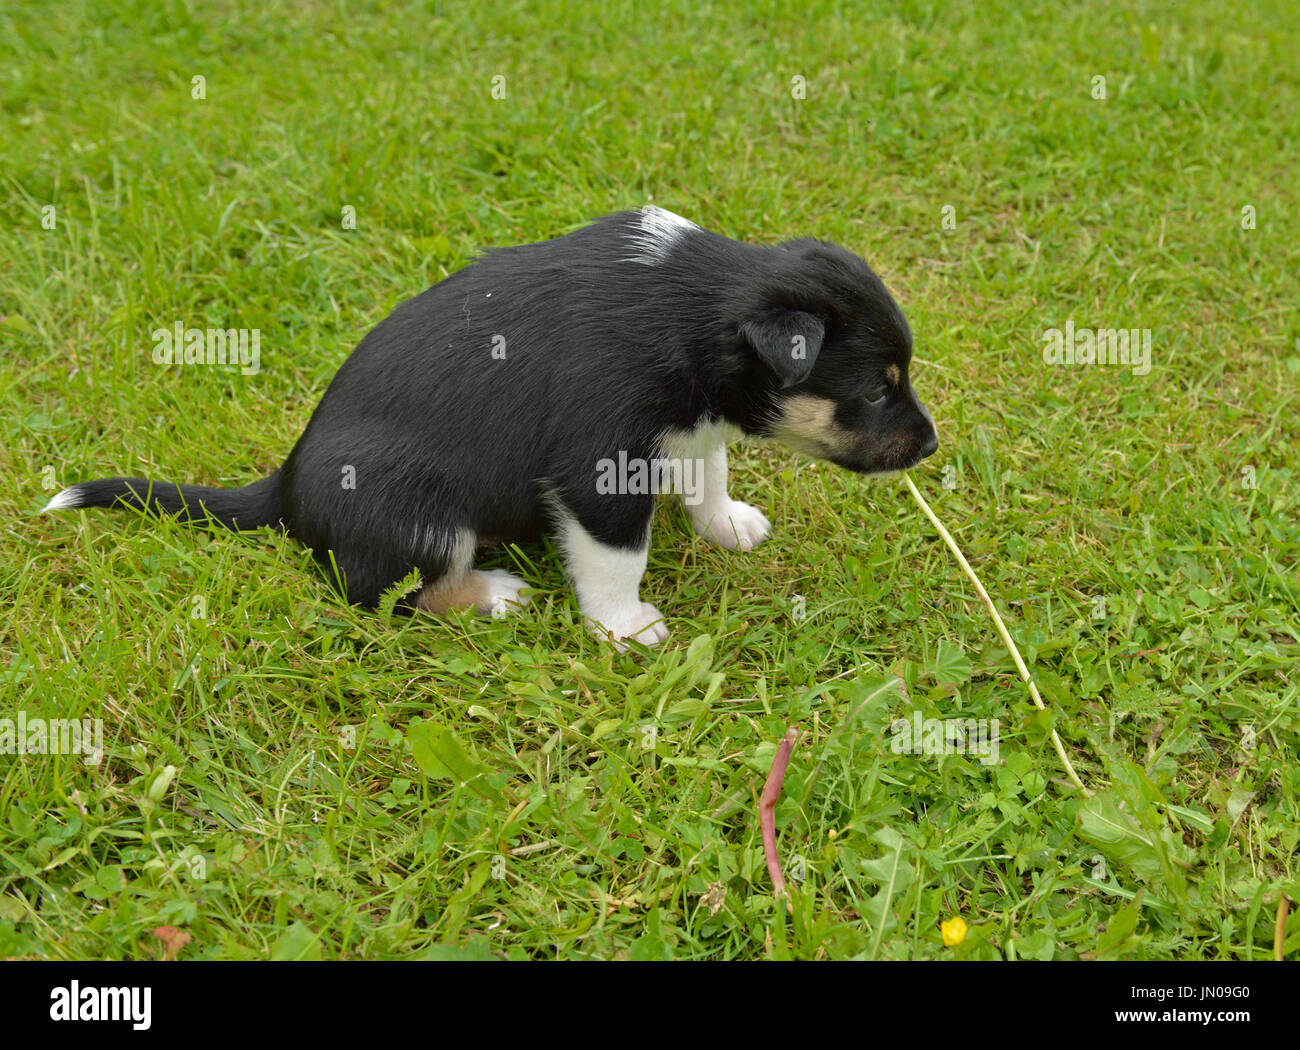 Lapponia renne cane, renne Herder, lapinporokoira (finlandese), lapsk vallhund (svedese). Cucciolo di giocare con il tarassaco Foto Stock